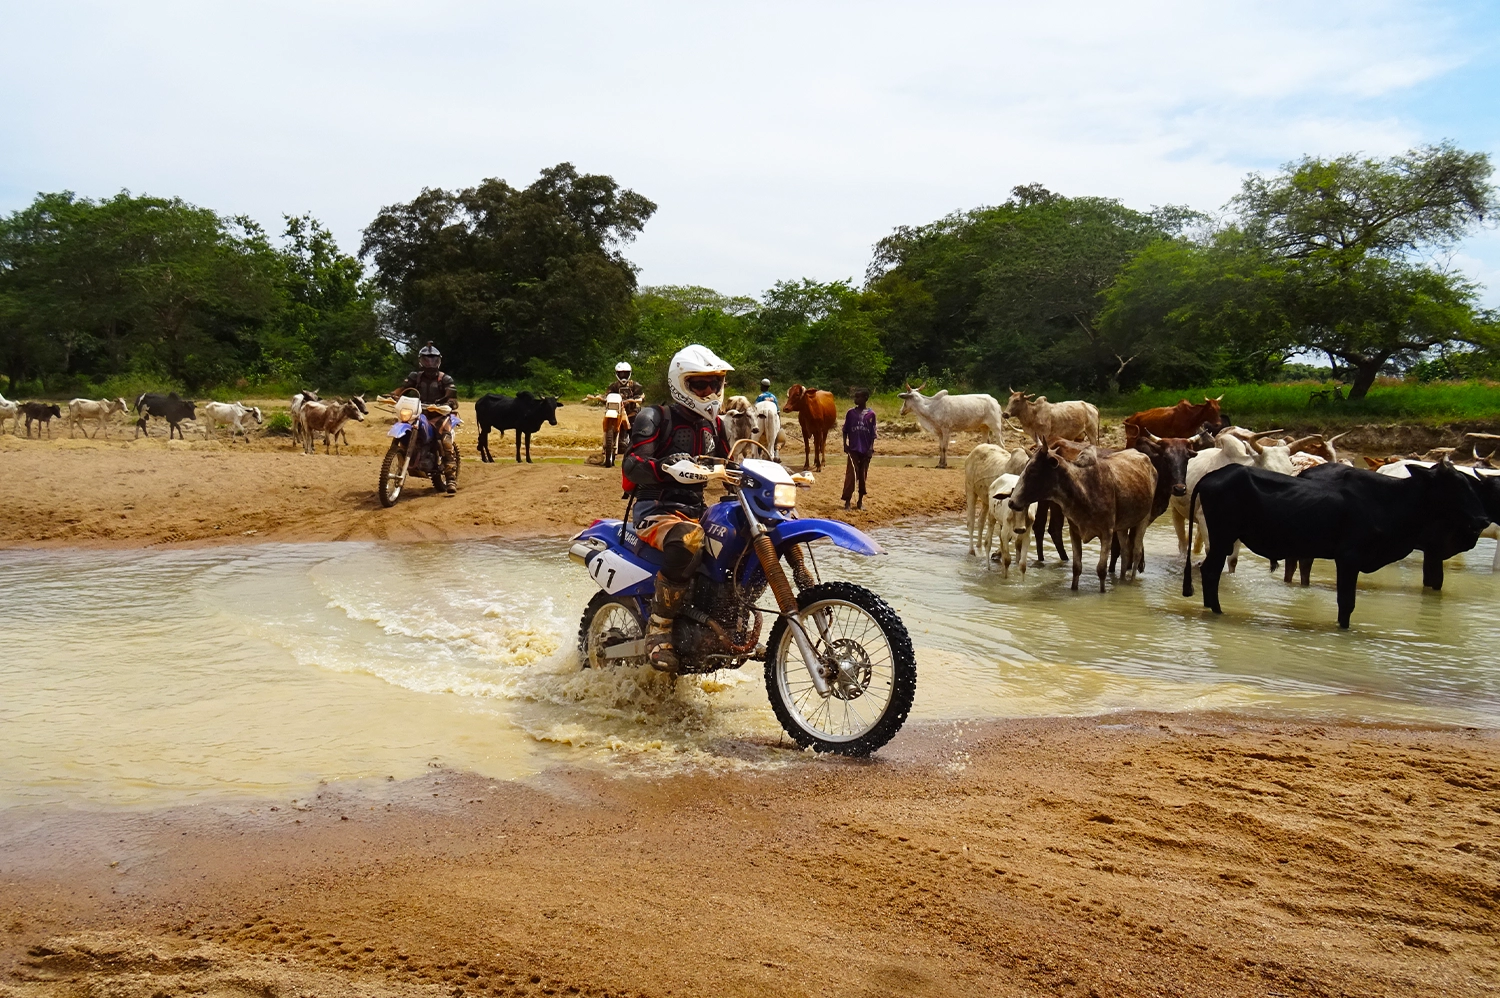 voyages-circuits-et-tourisme-afrique-moto-tours-ride-ouest-afrique-inter-pays tout terrain parmi les bétails en pleine nature